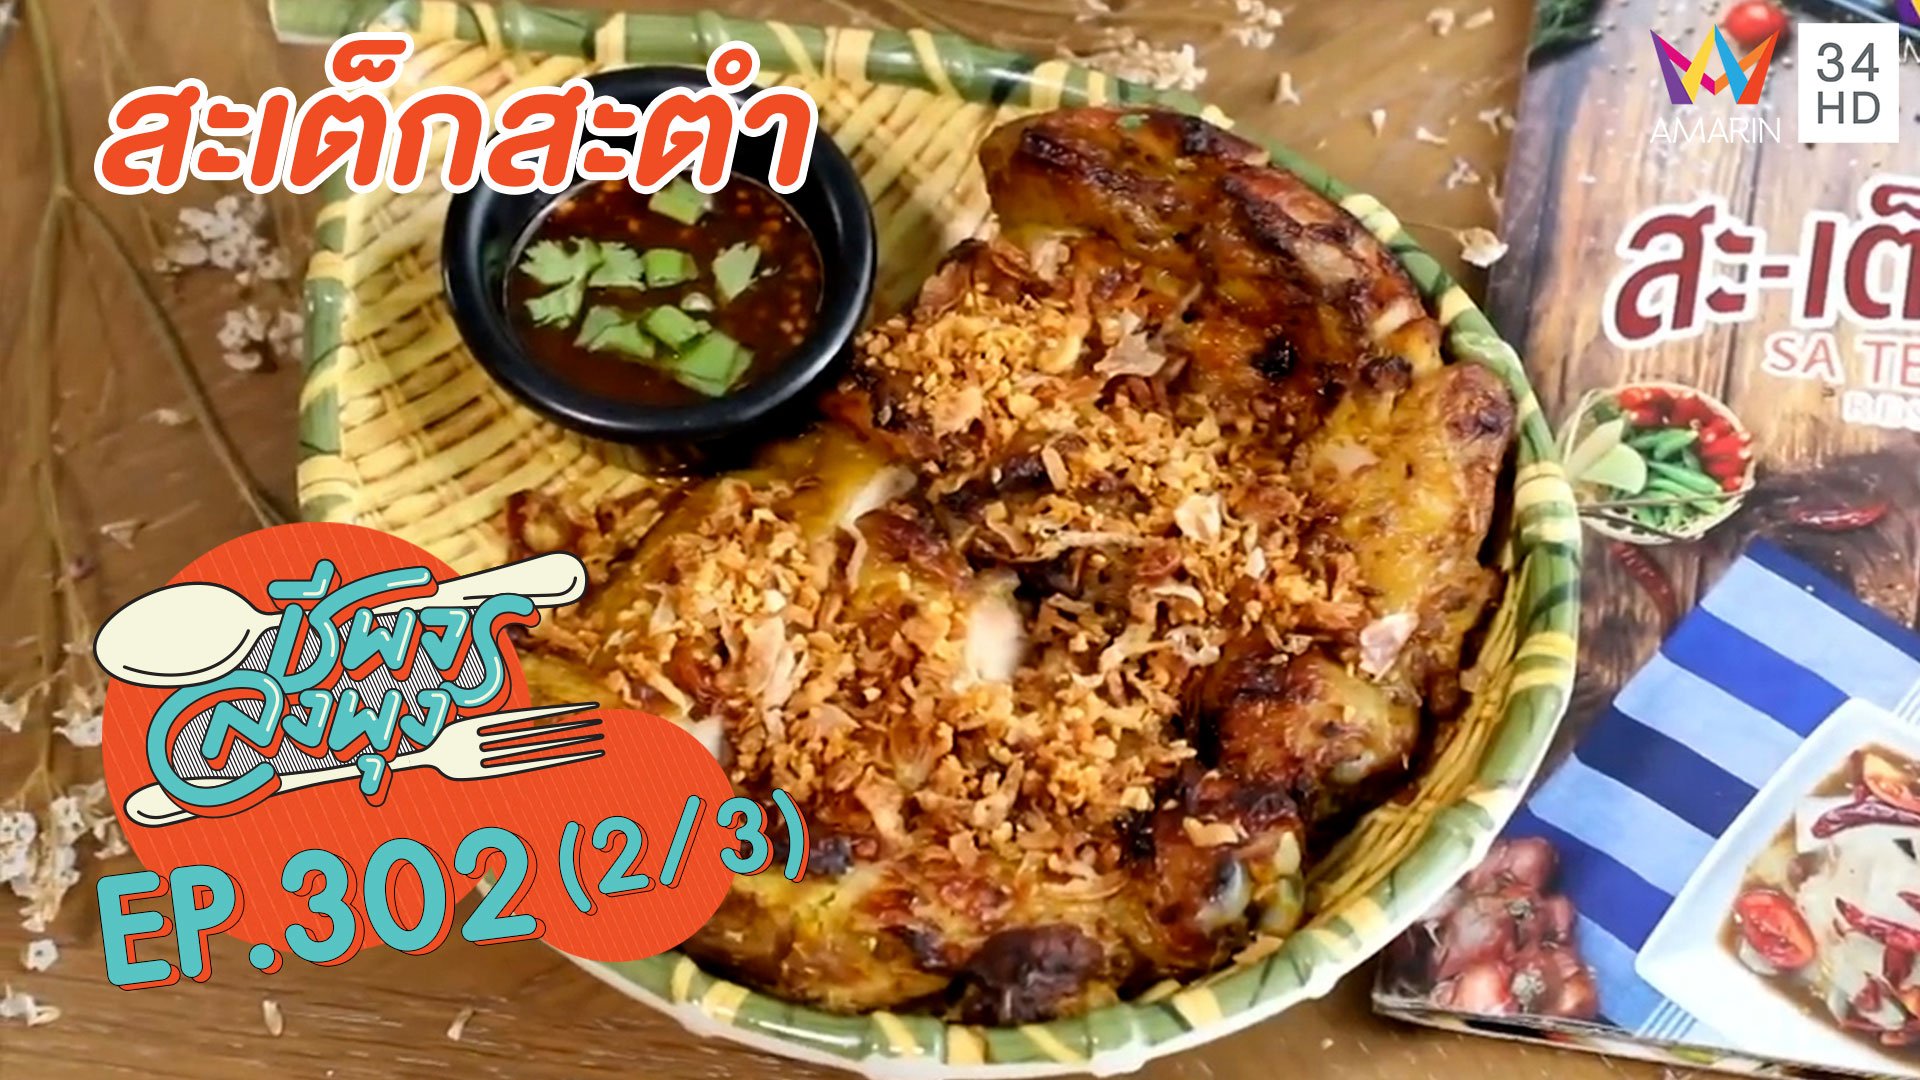 ทีเด็ดอาหารอีสานฟิวชั่น @ร้านสะเต็กสะตำ | ชีพจรลงพุง | 12 มิ.ย. 64 (2/3) | AMARIN TVHD34